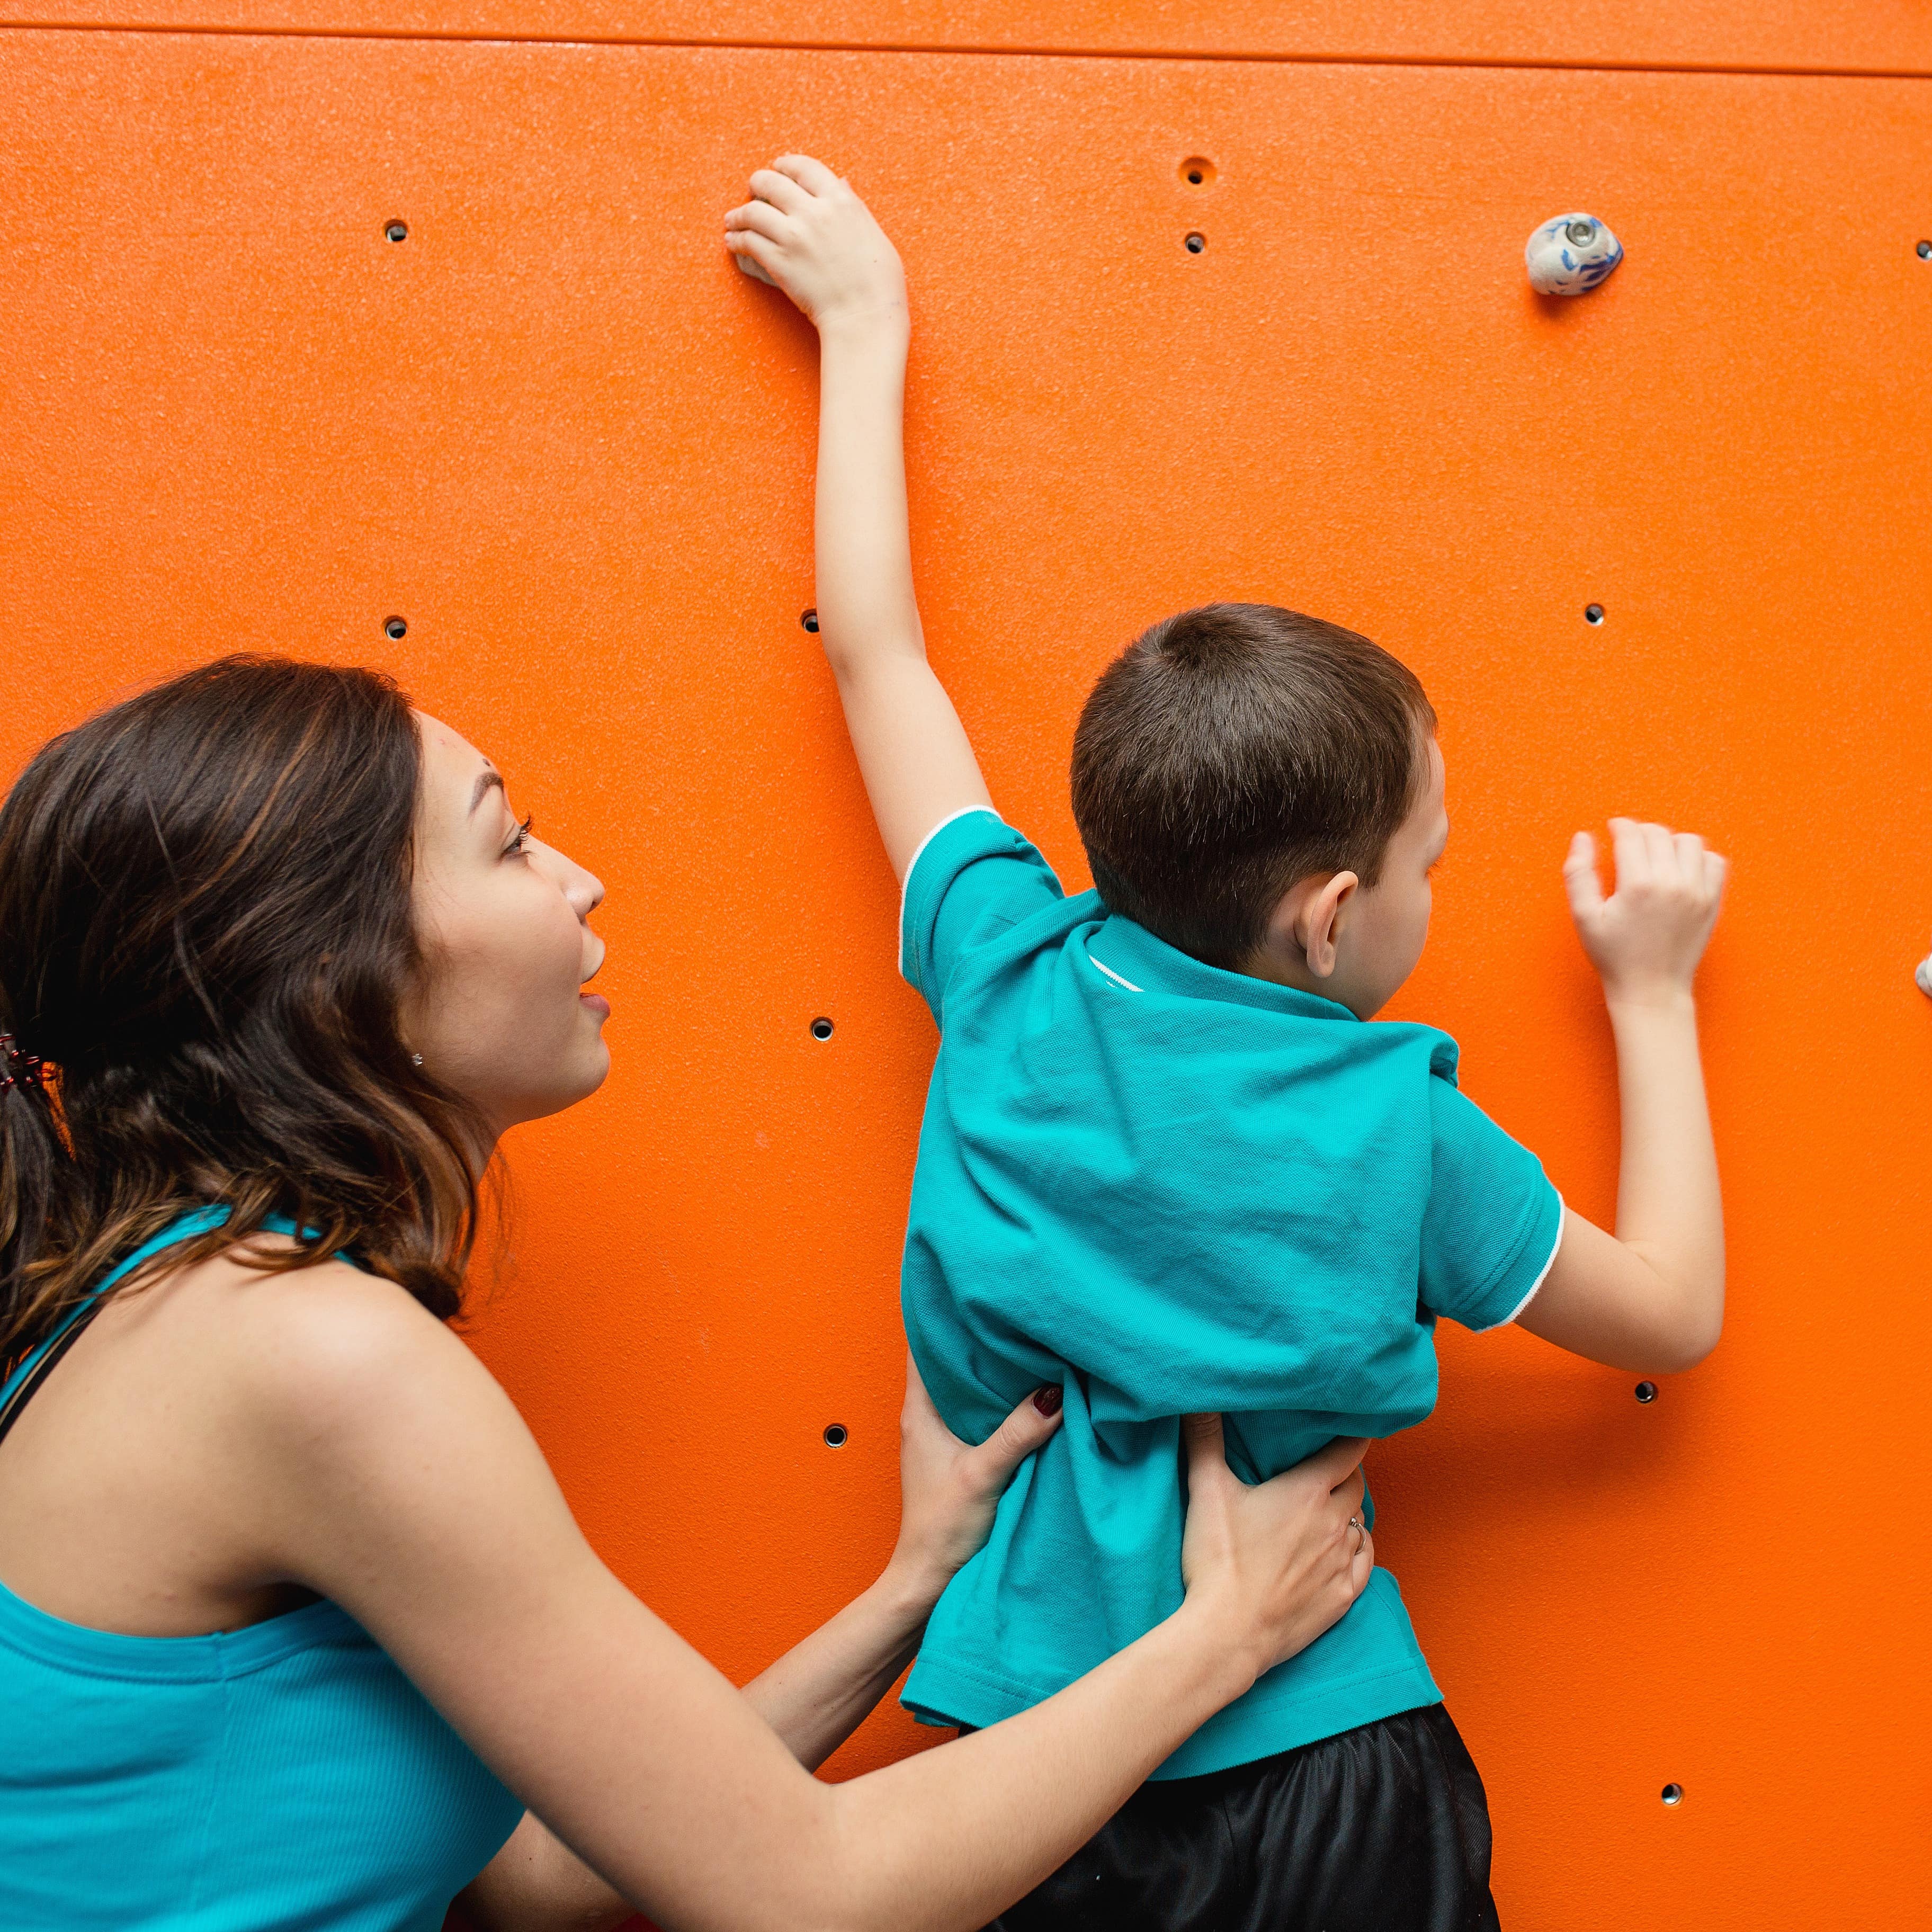 Mutter hilft ihrem Sohn an einer Kletterwand hochzuklettern. Beide tragen türkise Oberteile.